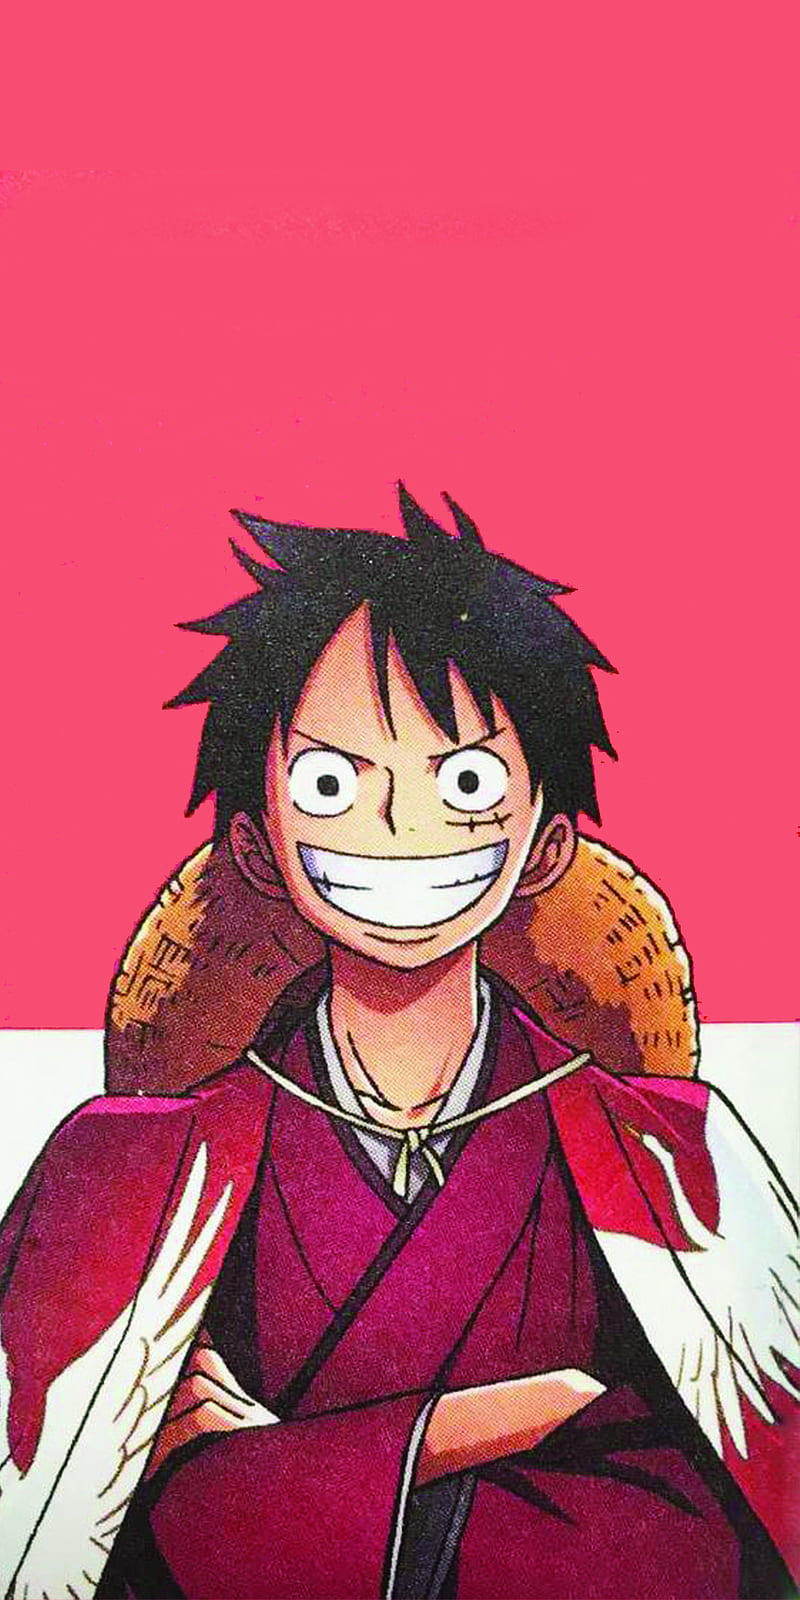 Khám phá One Piece Anime và truy cập vào một thế giới phiêu lưu, hài hước và đầy kịch tính. Cùng lắng nghe câu chuyện của Luffy và những Nakama trong hành trình tìm kiếm kho báu One Piece.